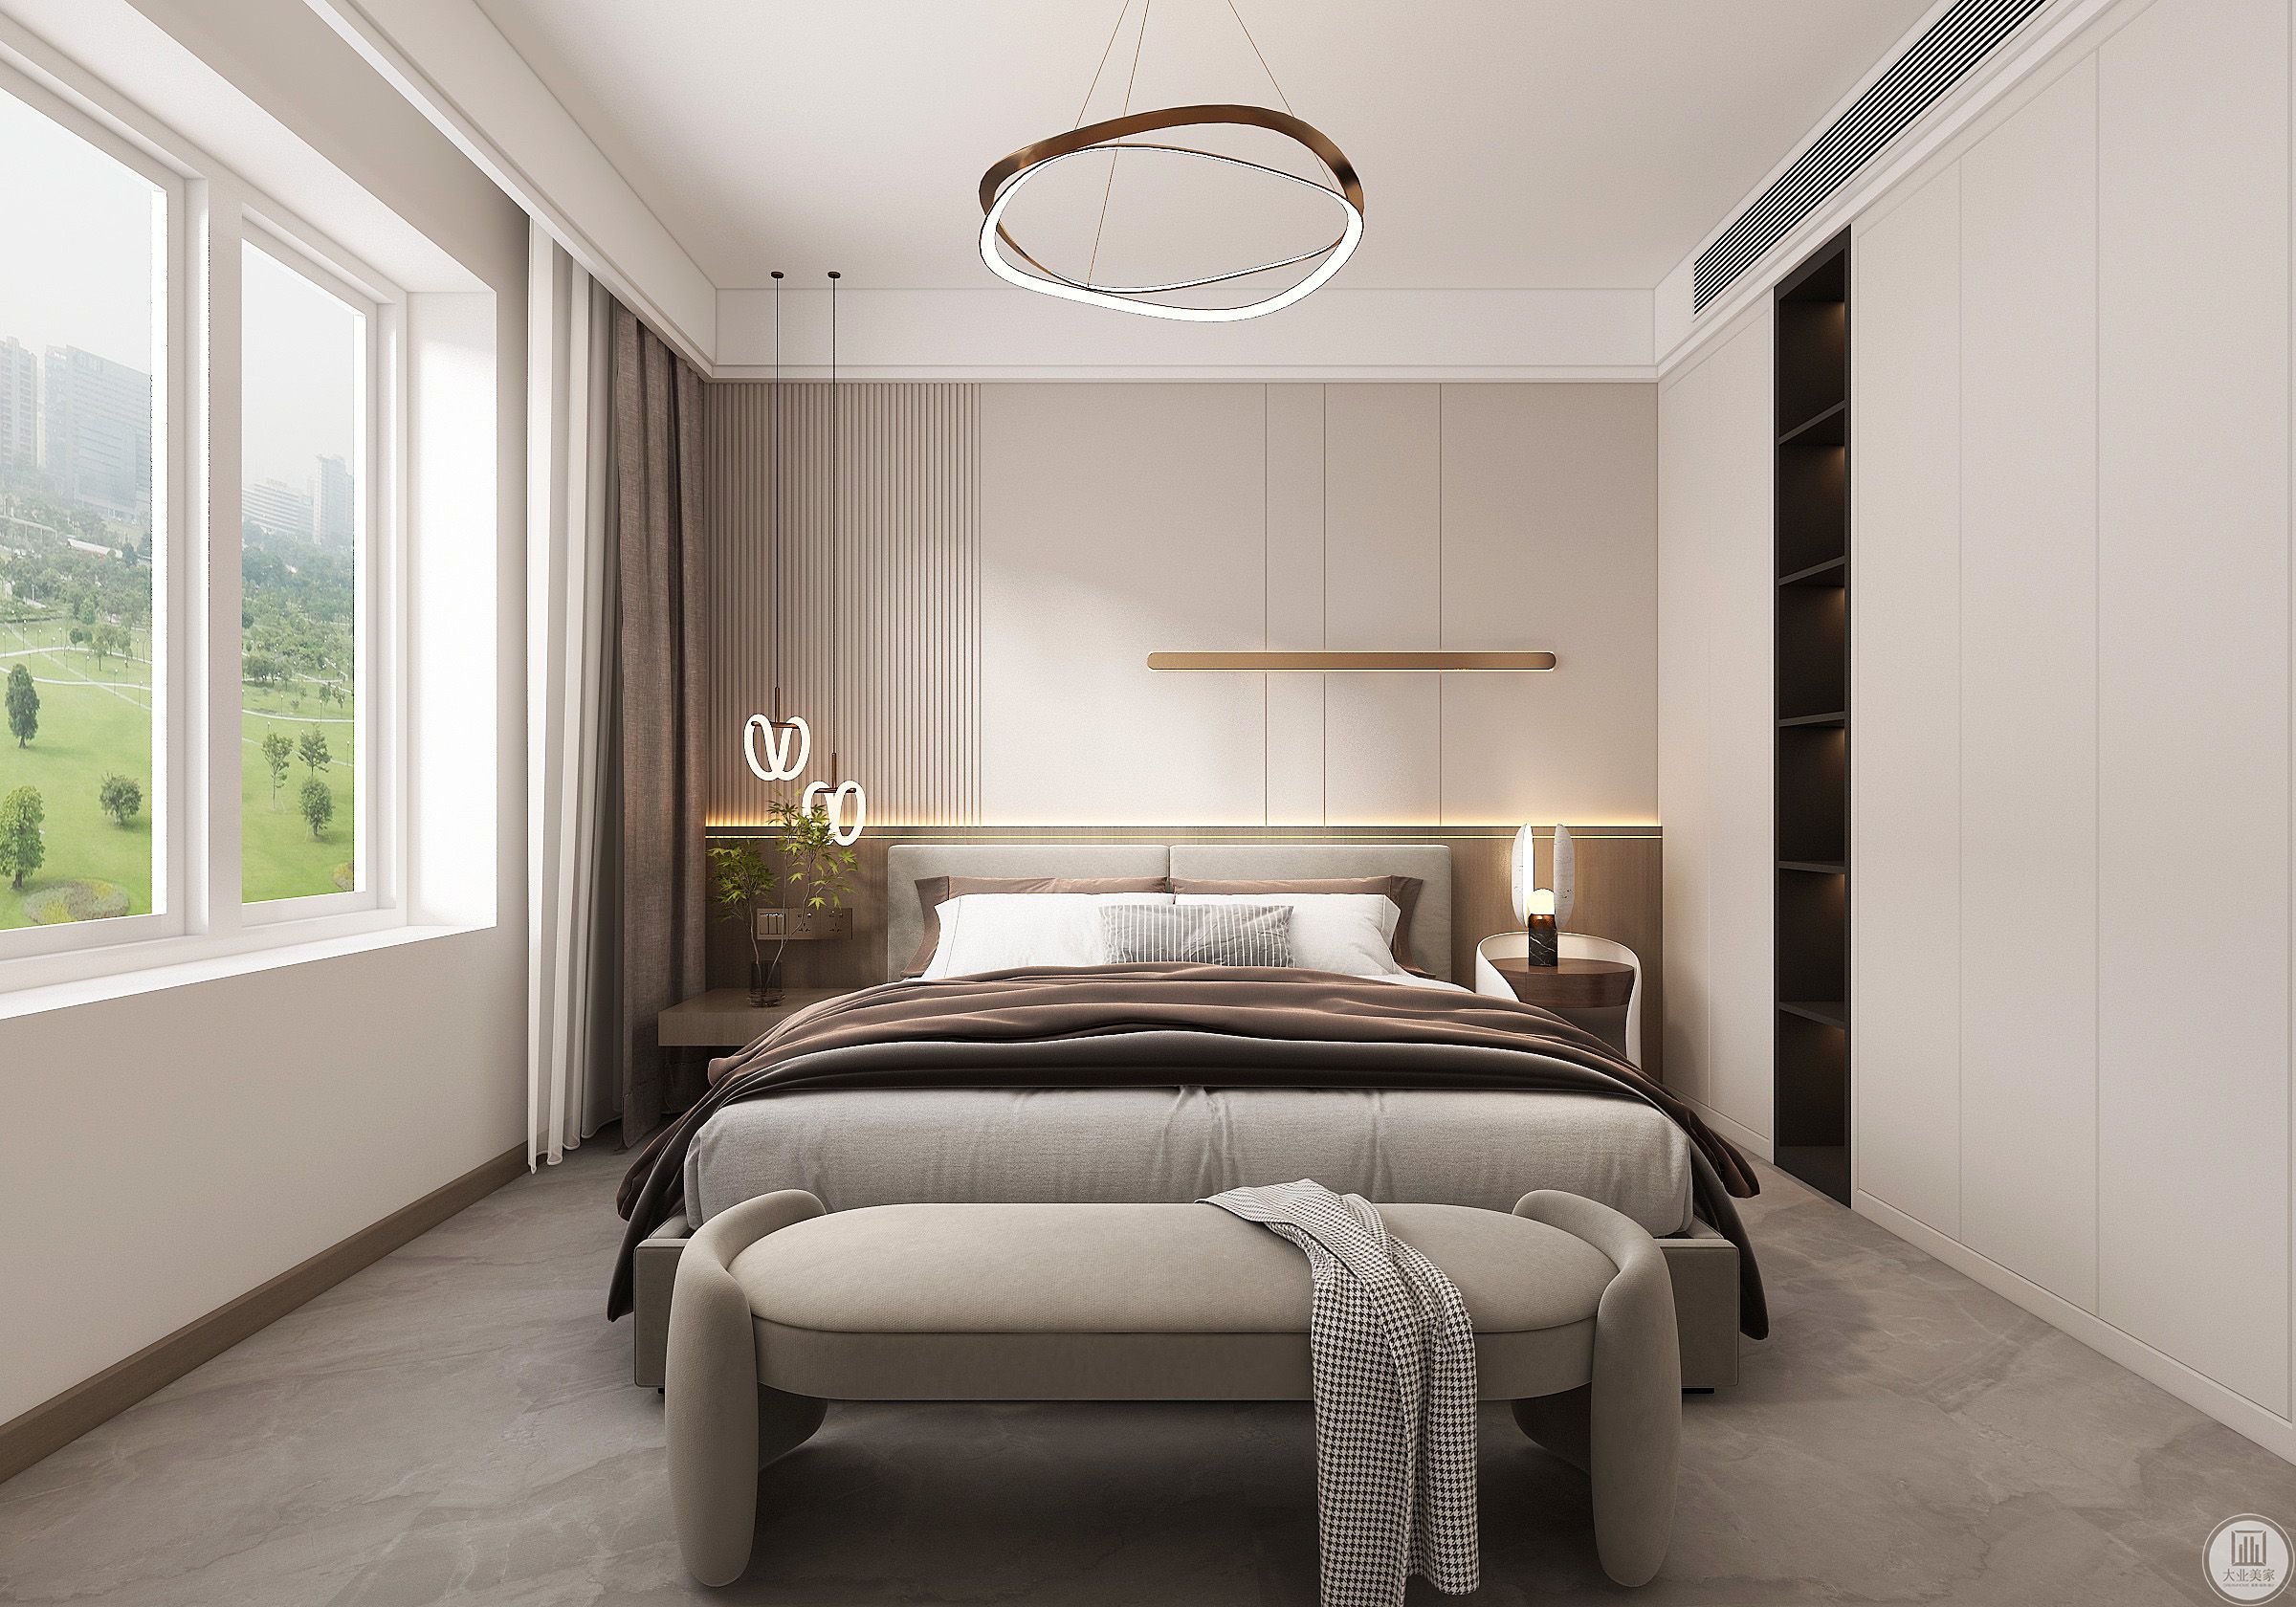 床头背景墙的线条与壁灯的搭配，让主卧空间的整体陈设简约而灵动